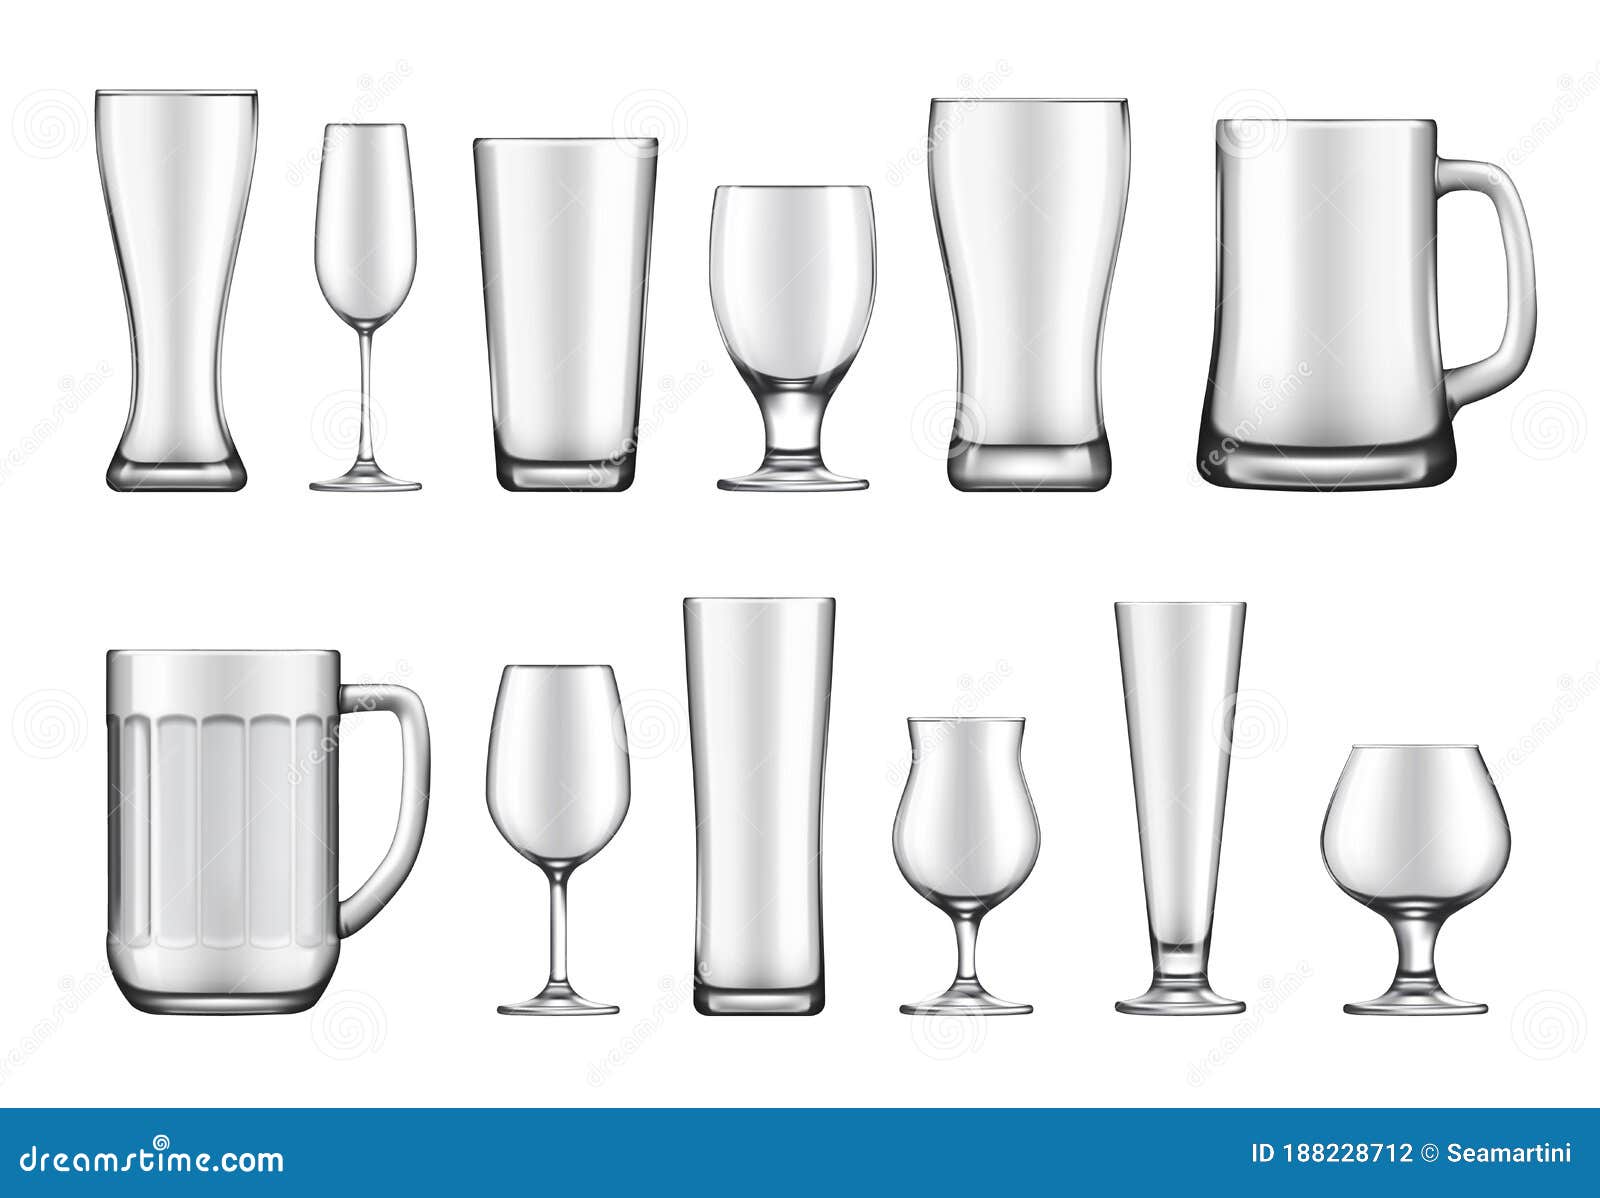 https://thumbs.dreamstime.com/z/glass-goblets-mugs-jars-vector-set-goblet-mug-jar-realistic-mockup-wineglass-flute-beer-weizen-pilsner-tankard-belgian-snifter-188228712.jpg